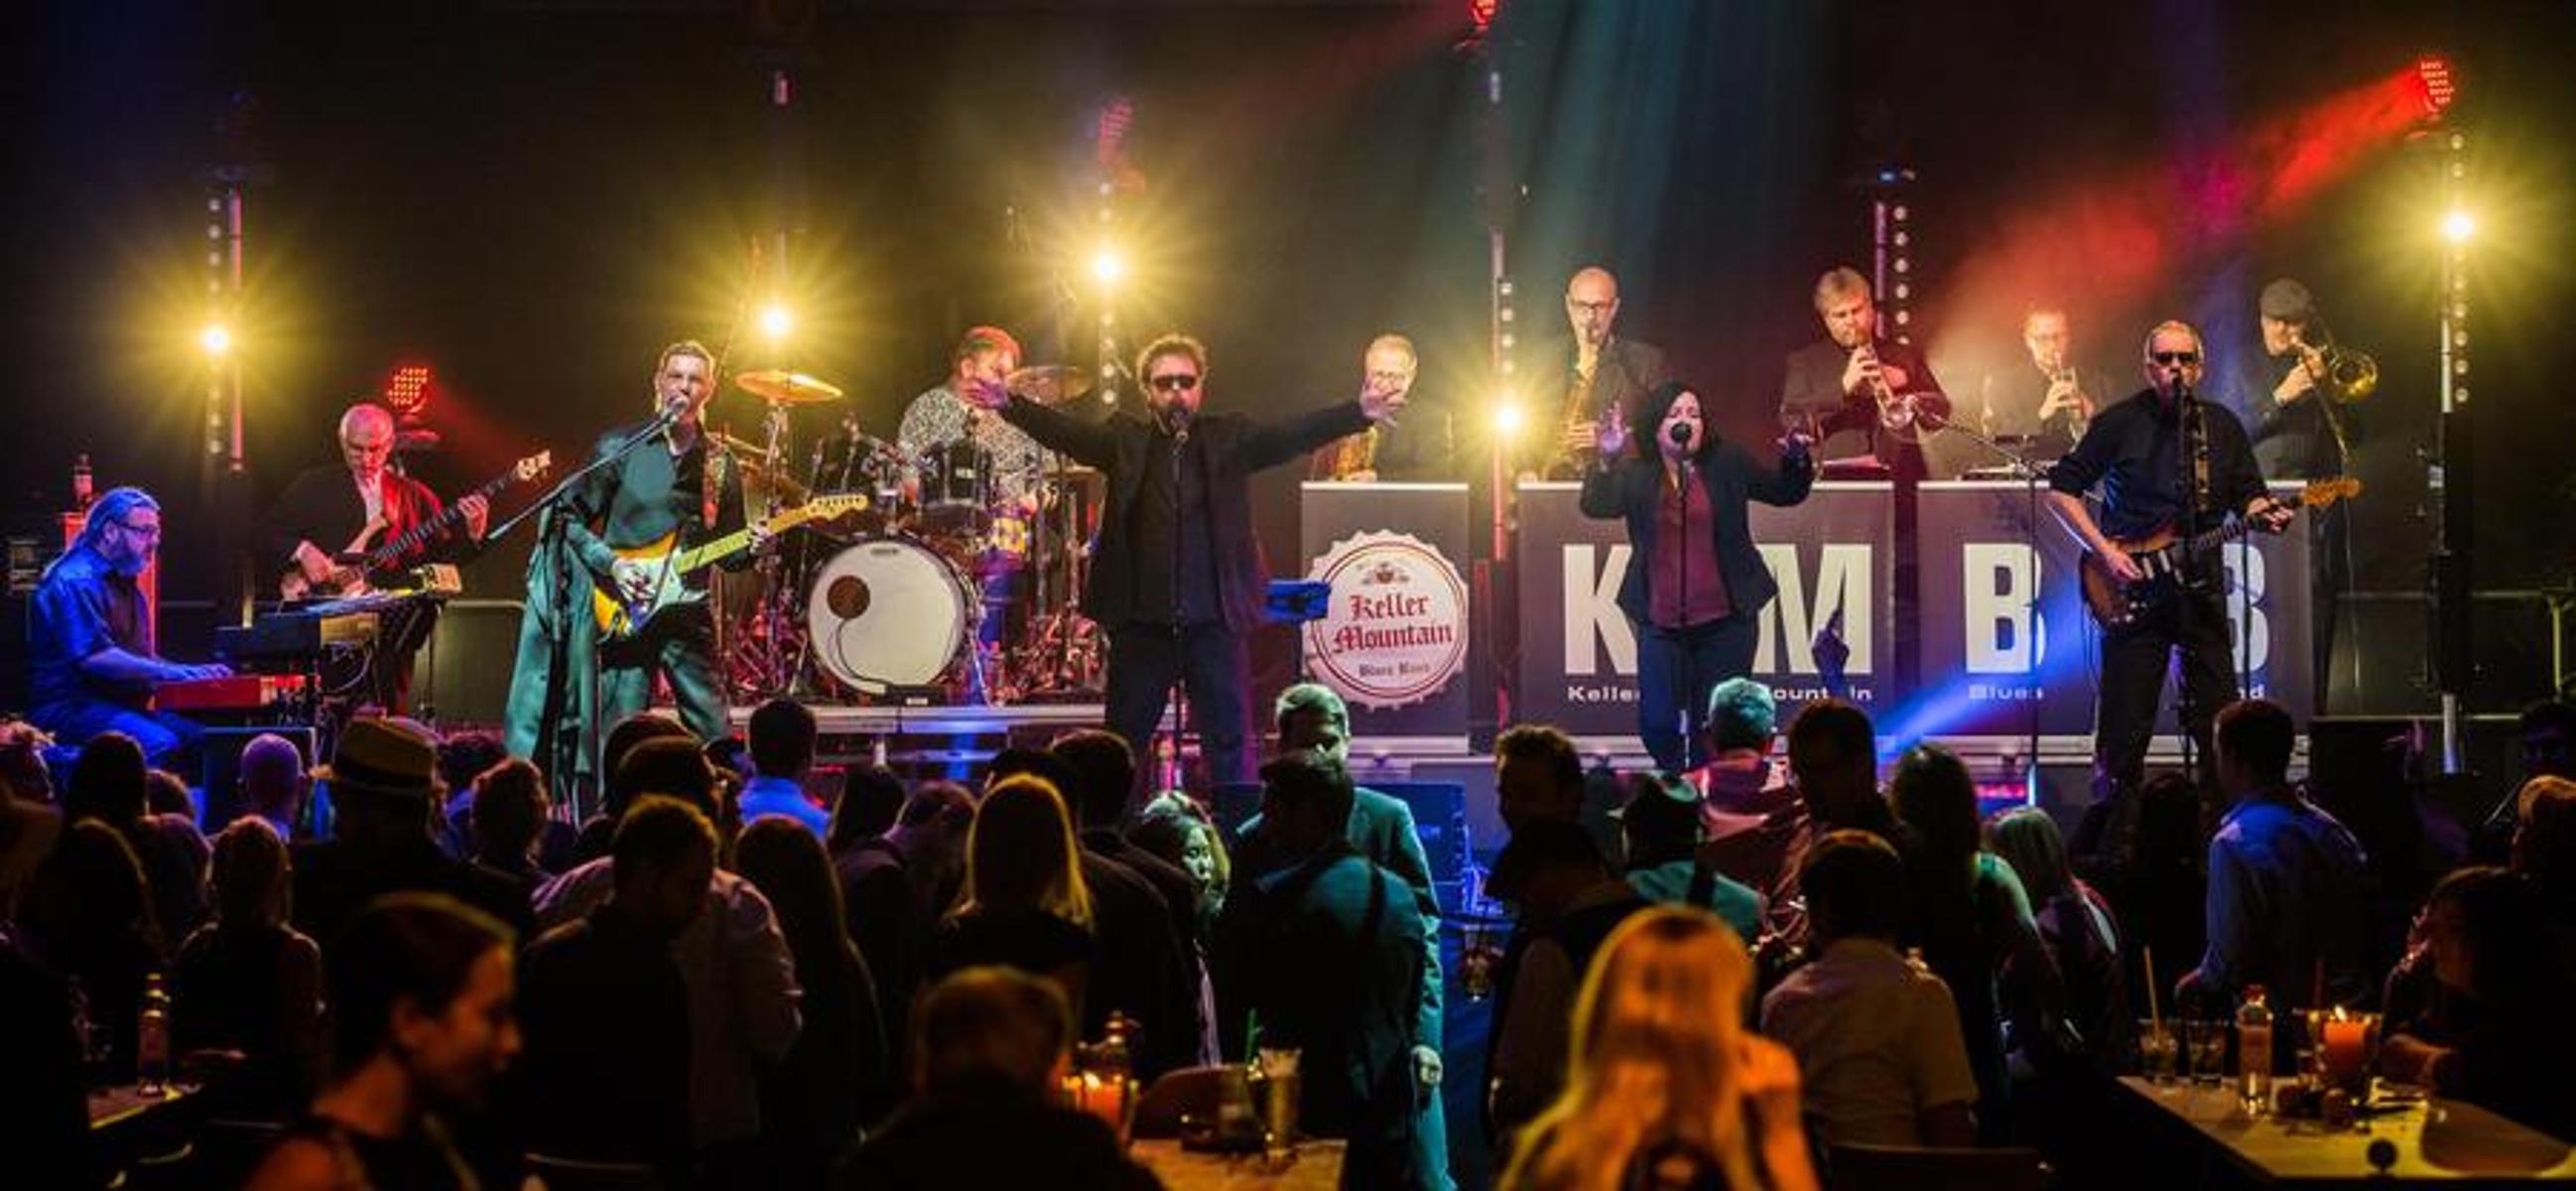 Keller Mountain Blues Band, die Formation, die seit 1985 in Oberfranken den Rhythm n Blues definiert, ist in ihrer Heimat längst eine Legende.Mit den beiden Leadsängern Nadin Albrecht und Alex Teubner, der groovigen Rhythm-Section und ihrem „Killer“-Bläsersatz ist die 11-köpfige Band s...